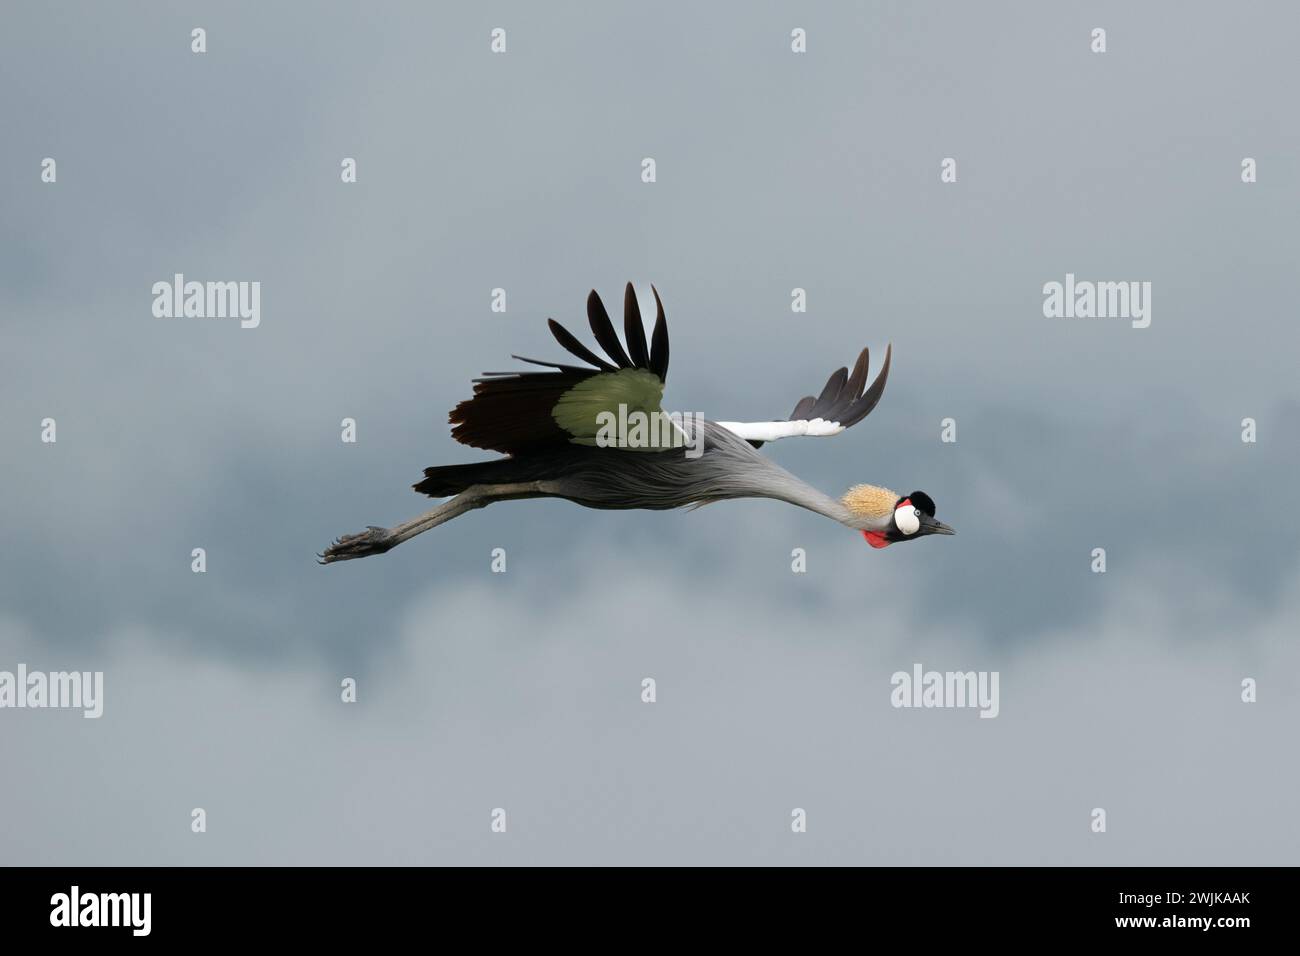 Cigogne planant avec bec ouvert contre le ciel gris Banque D'Images